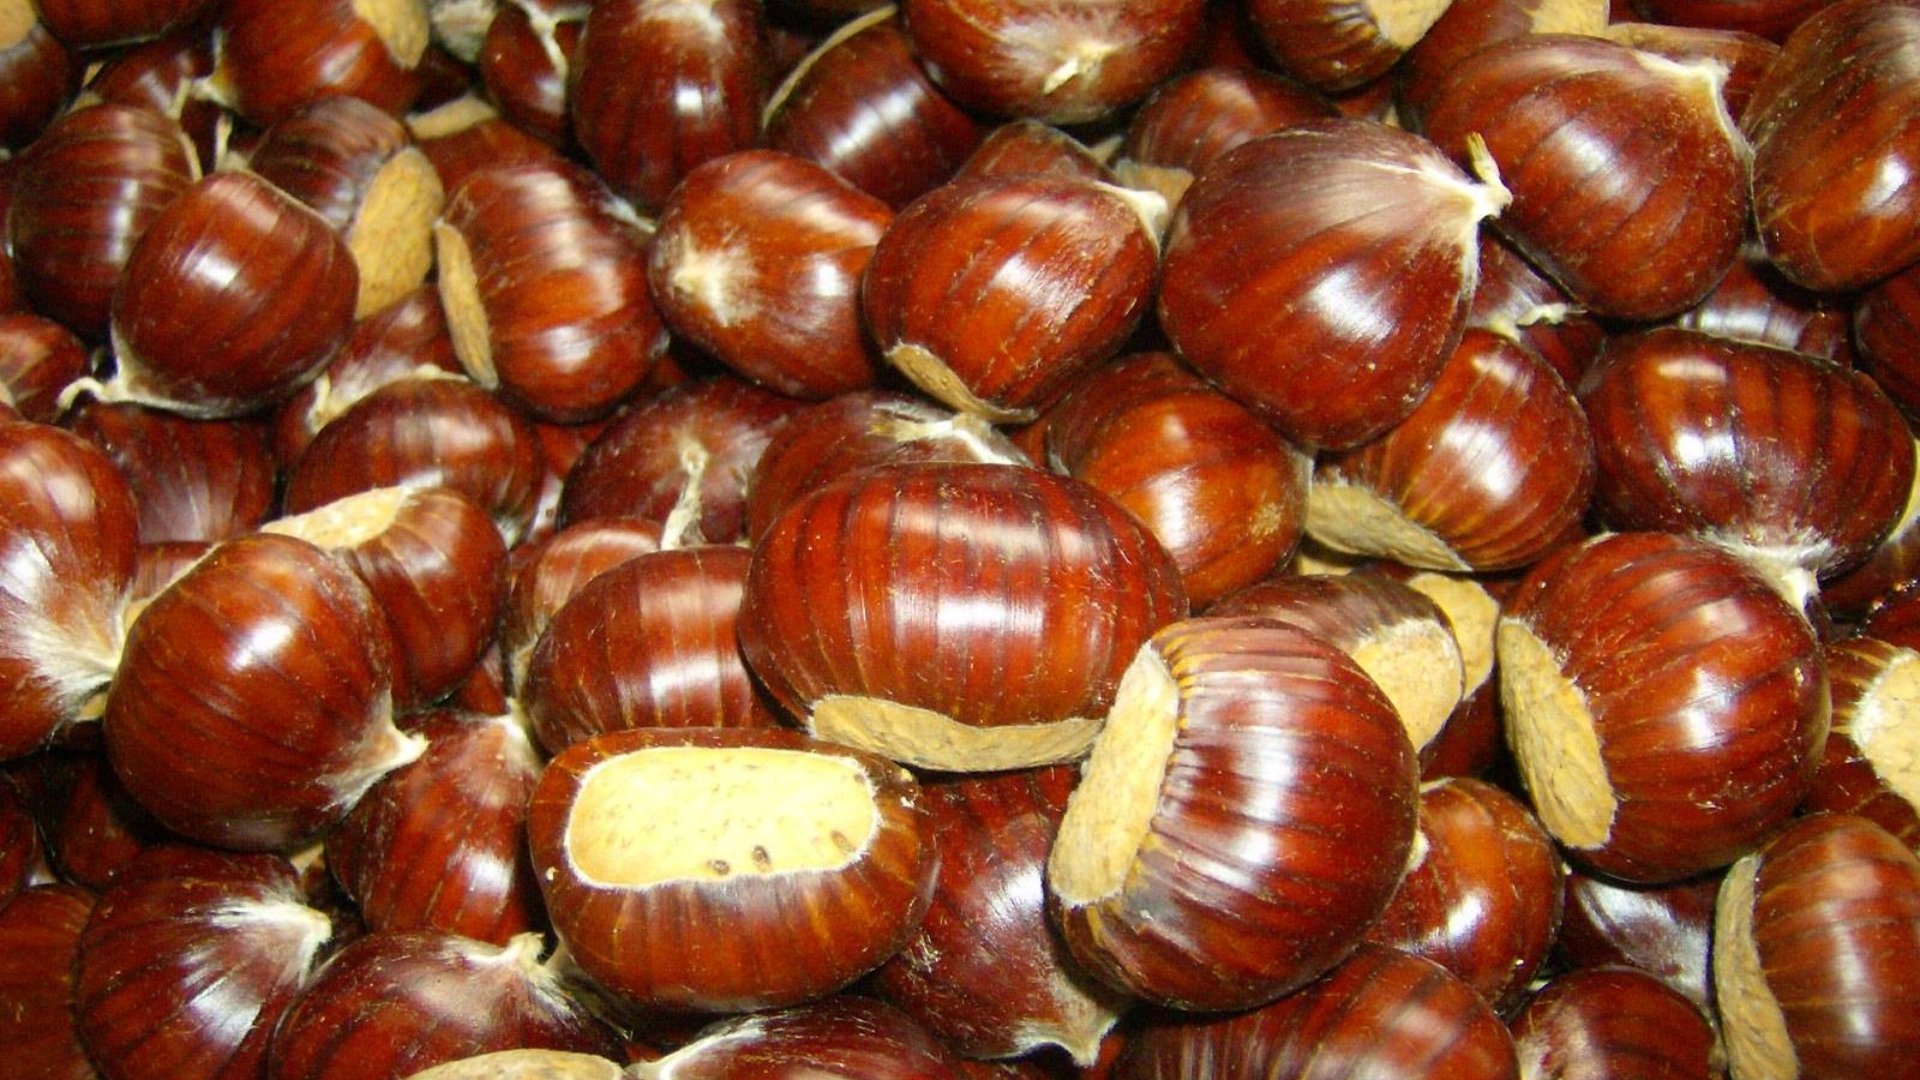 Marronen sind typische Herbstfrüchte der Toskana